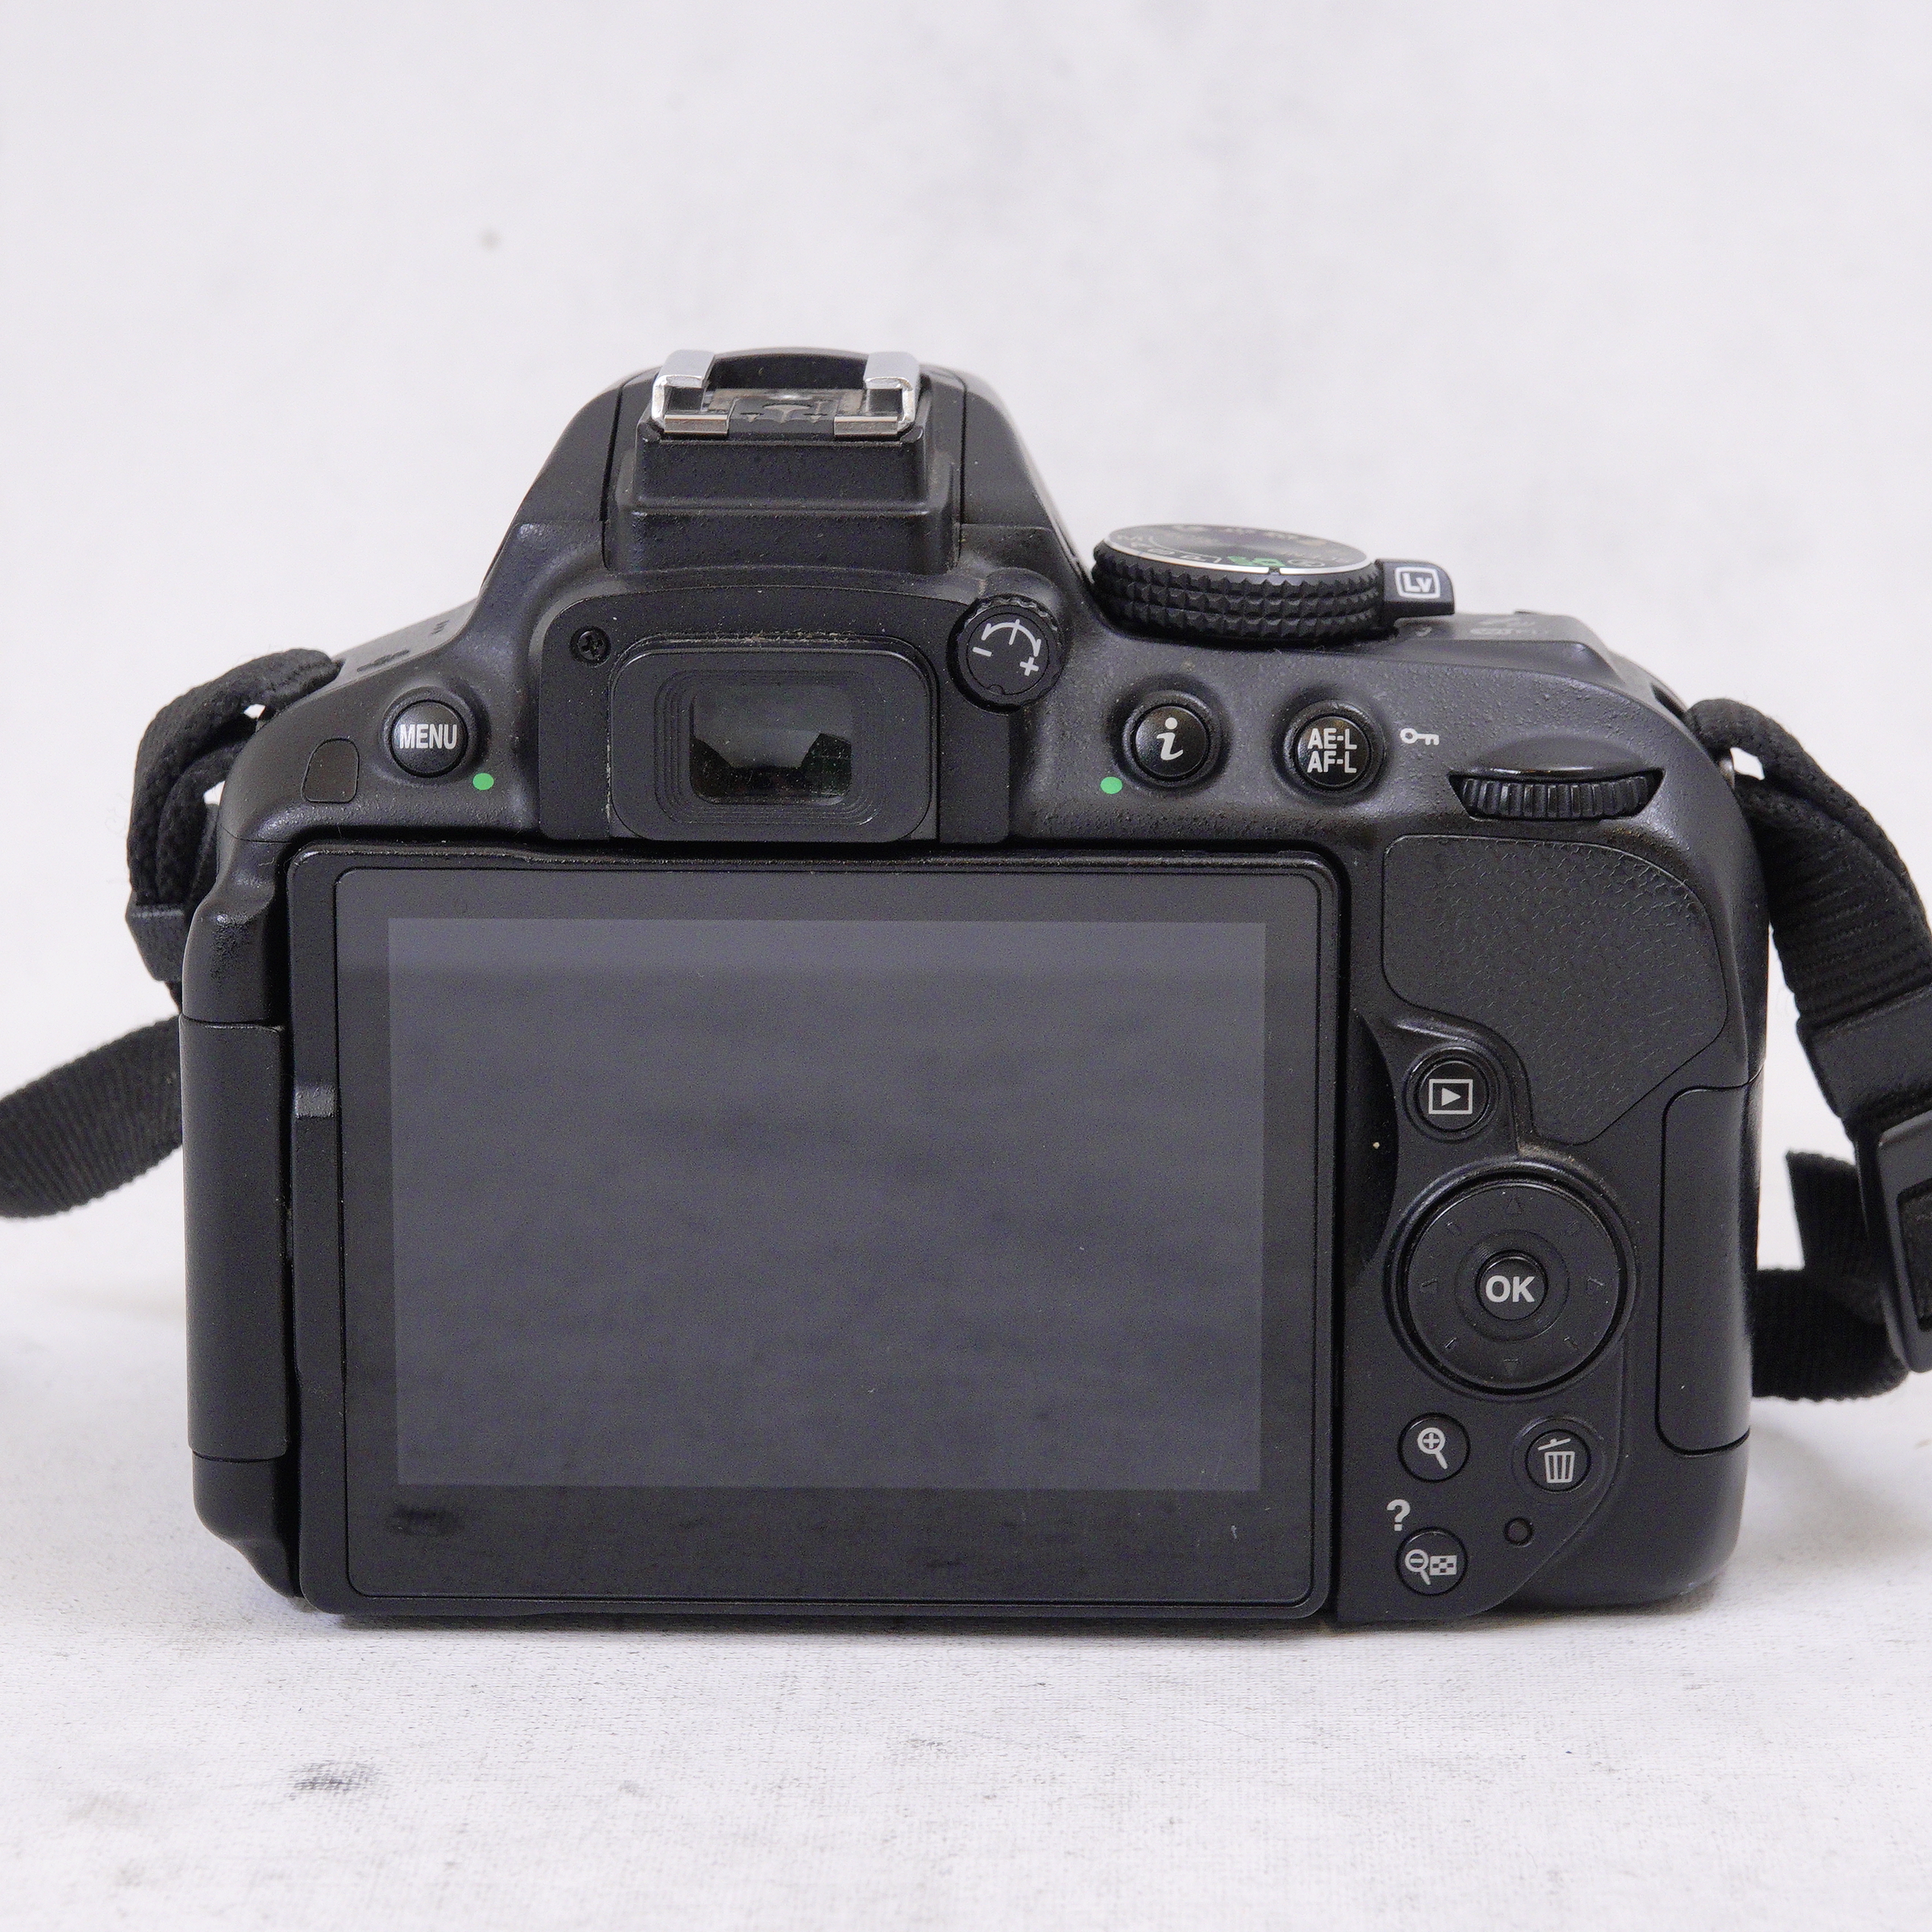 Nikon 5300 con lente 18-55mm kit más accesorios - Usado